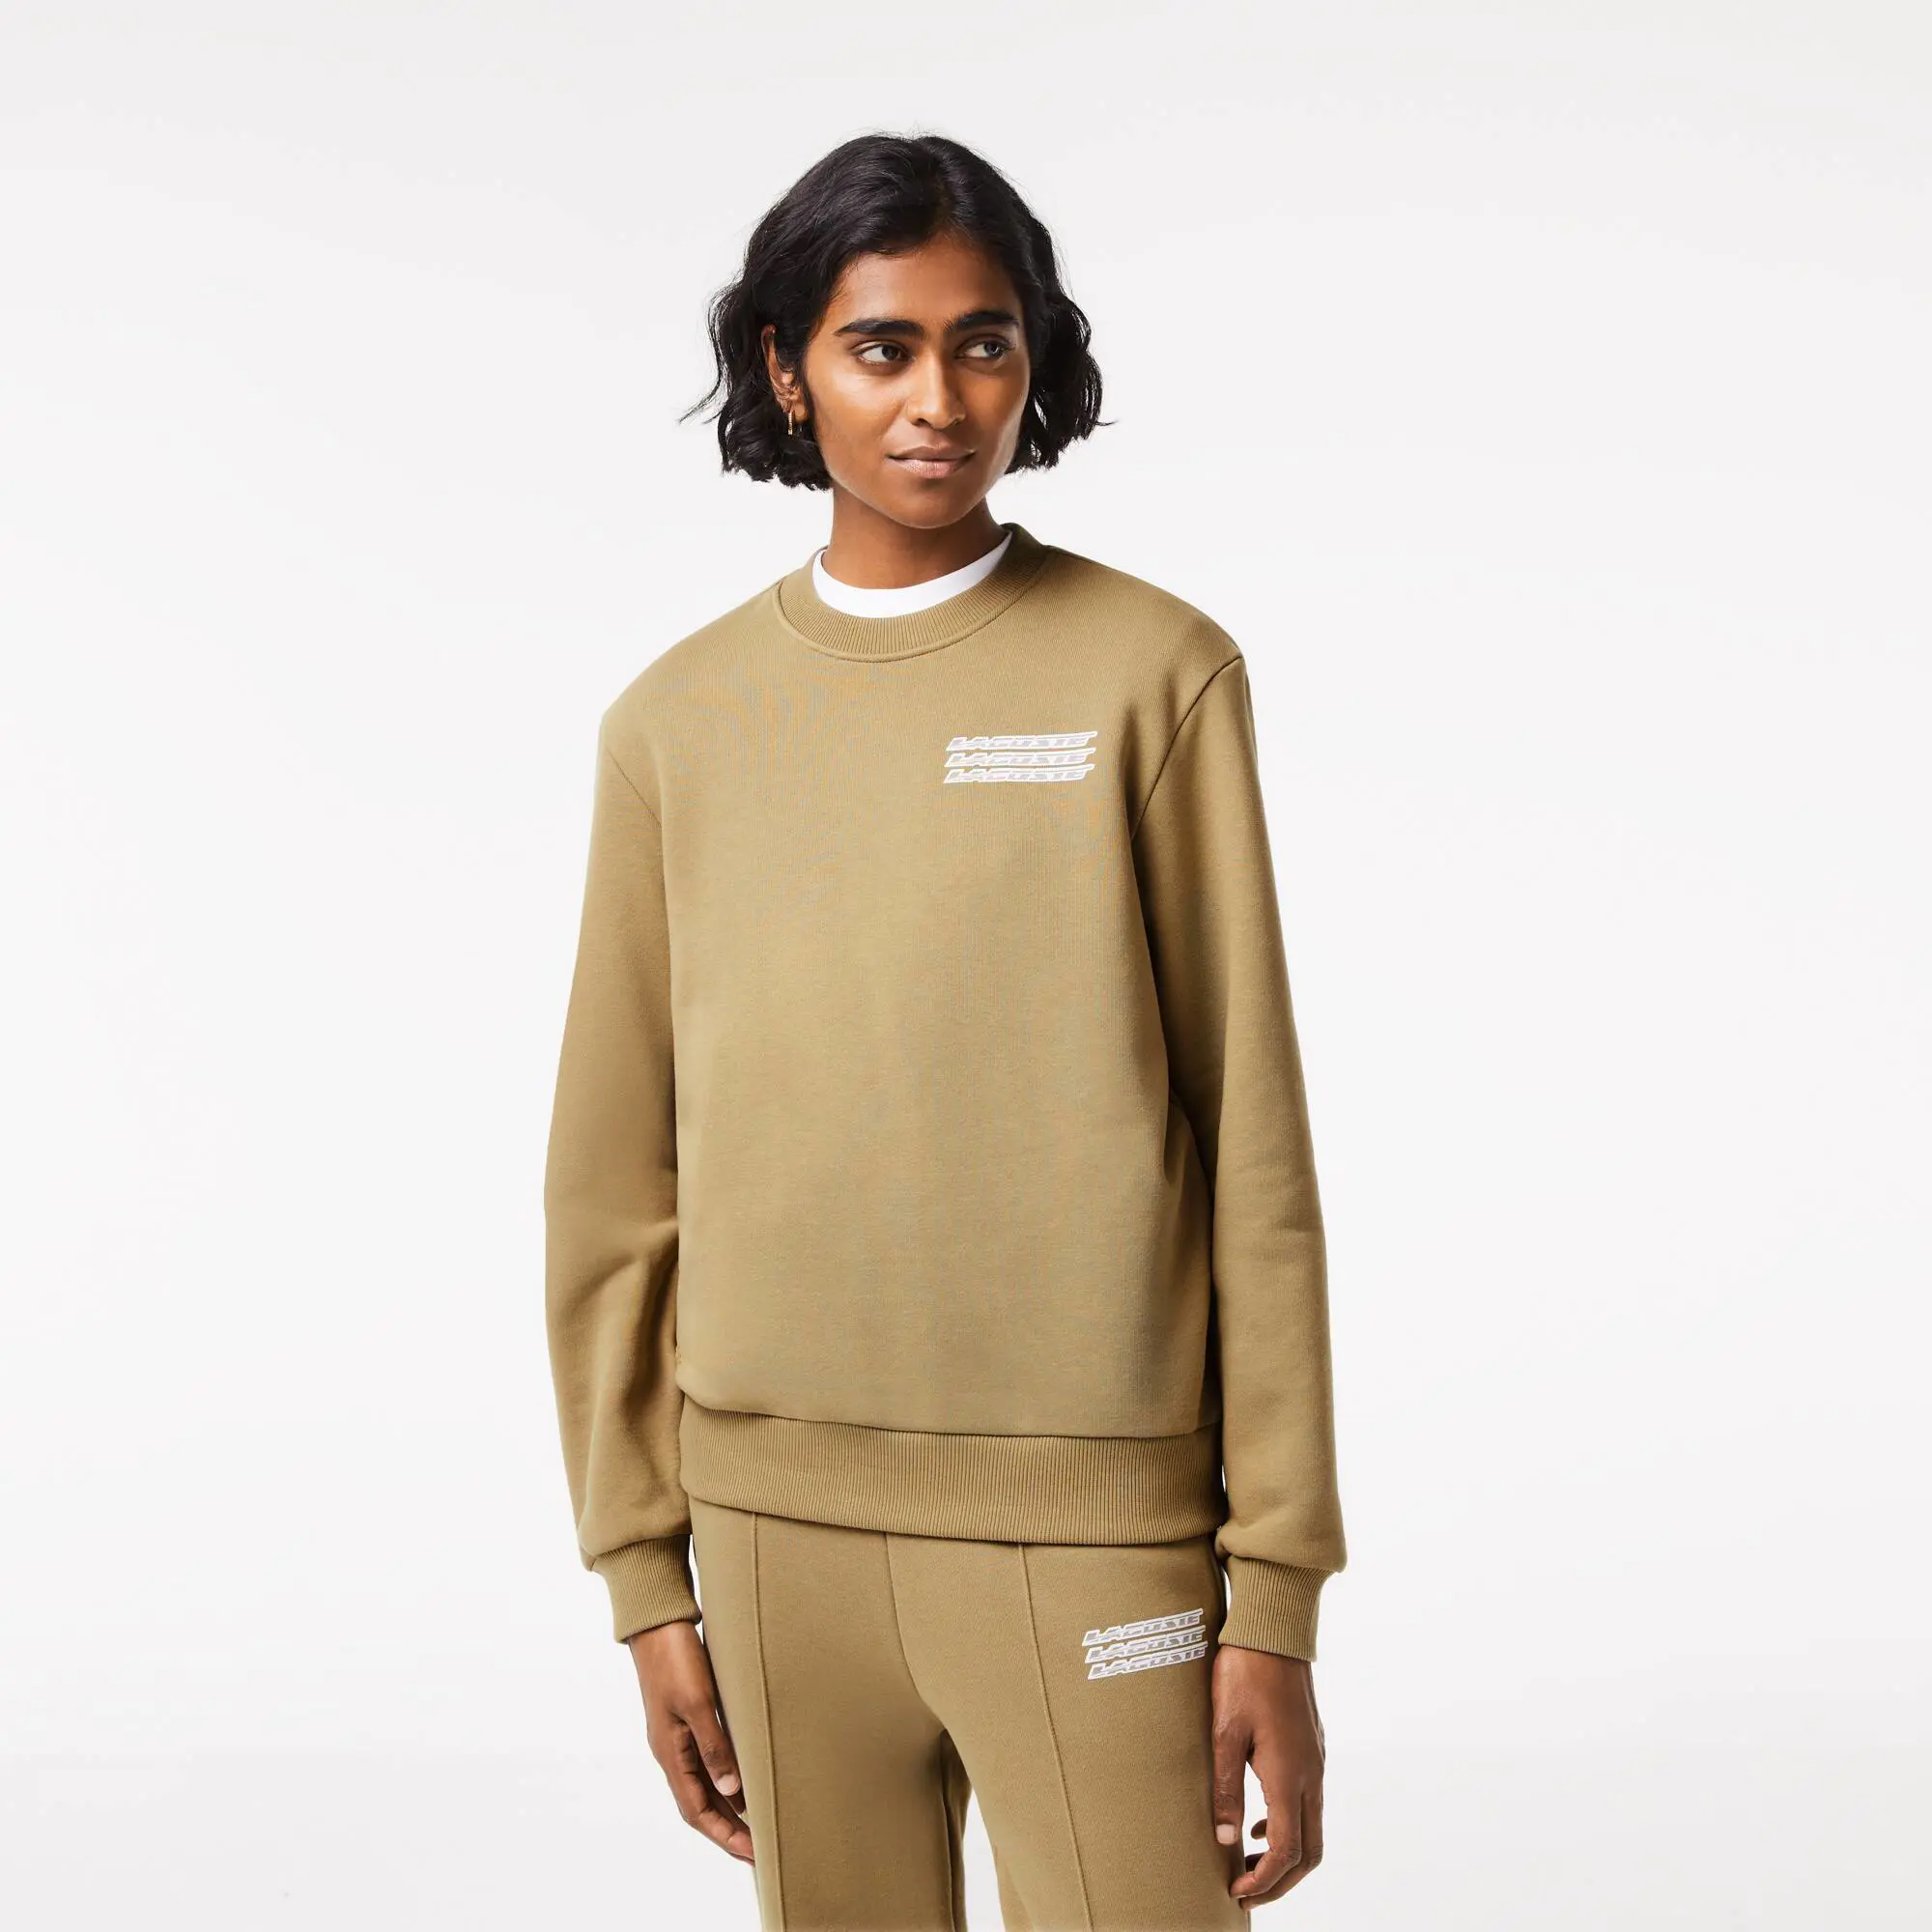 Lacoste Women’s Lacoste Unbrushed Fleece Printed Sweatshirt. 1